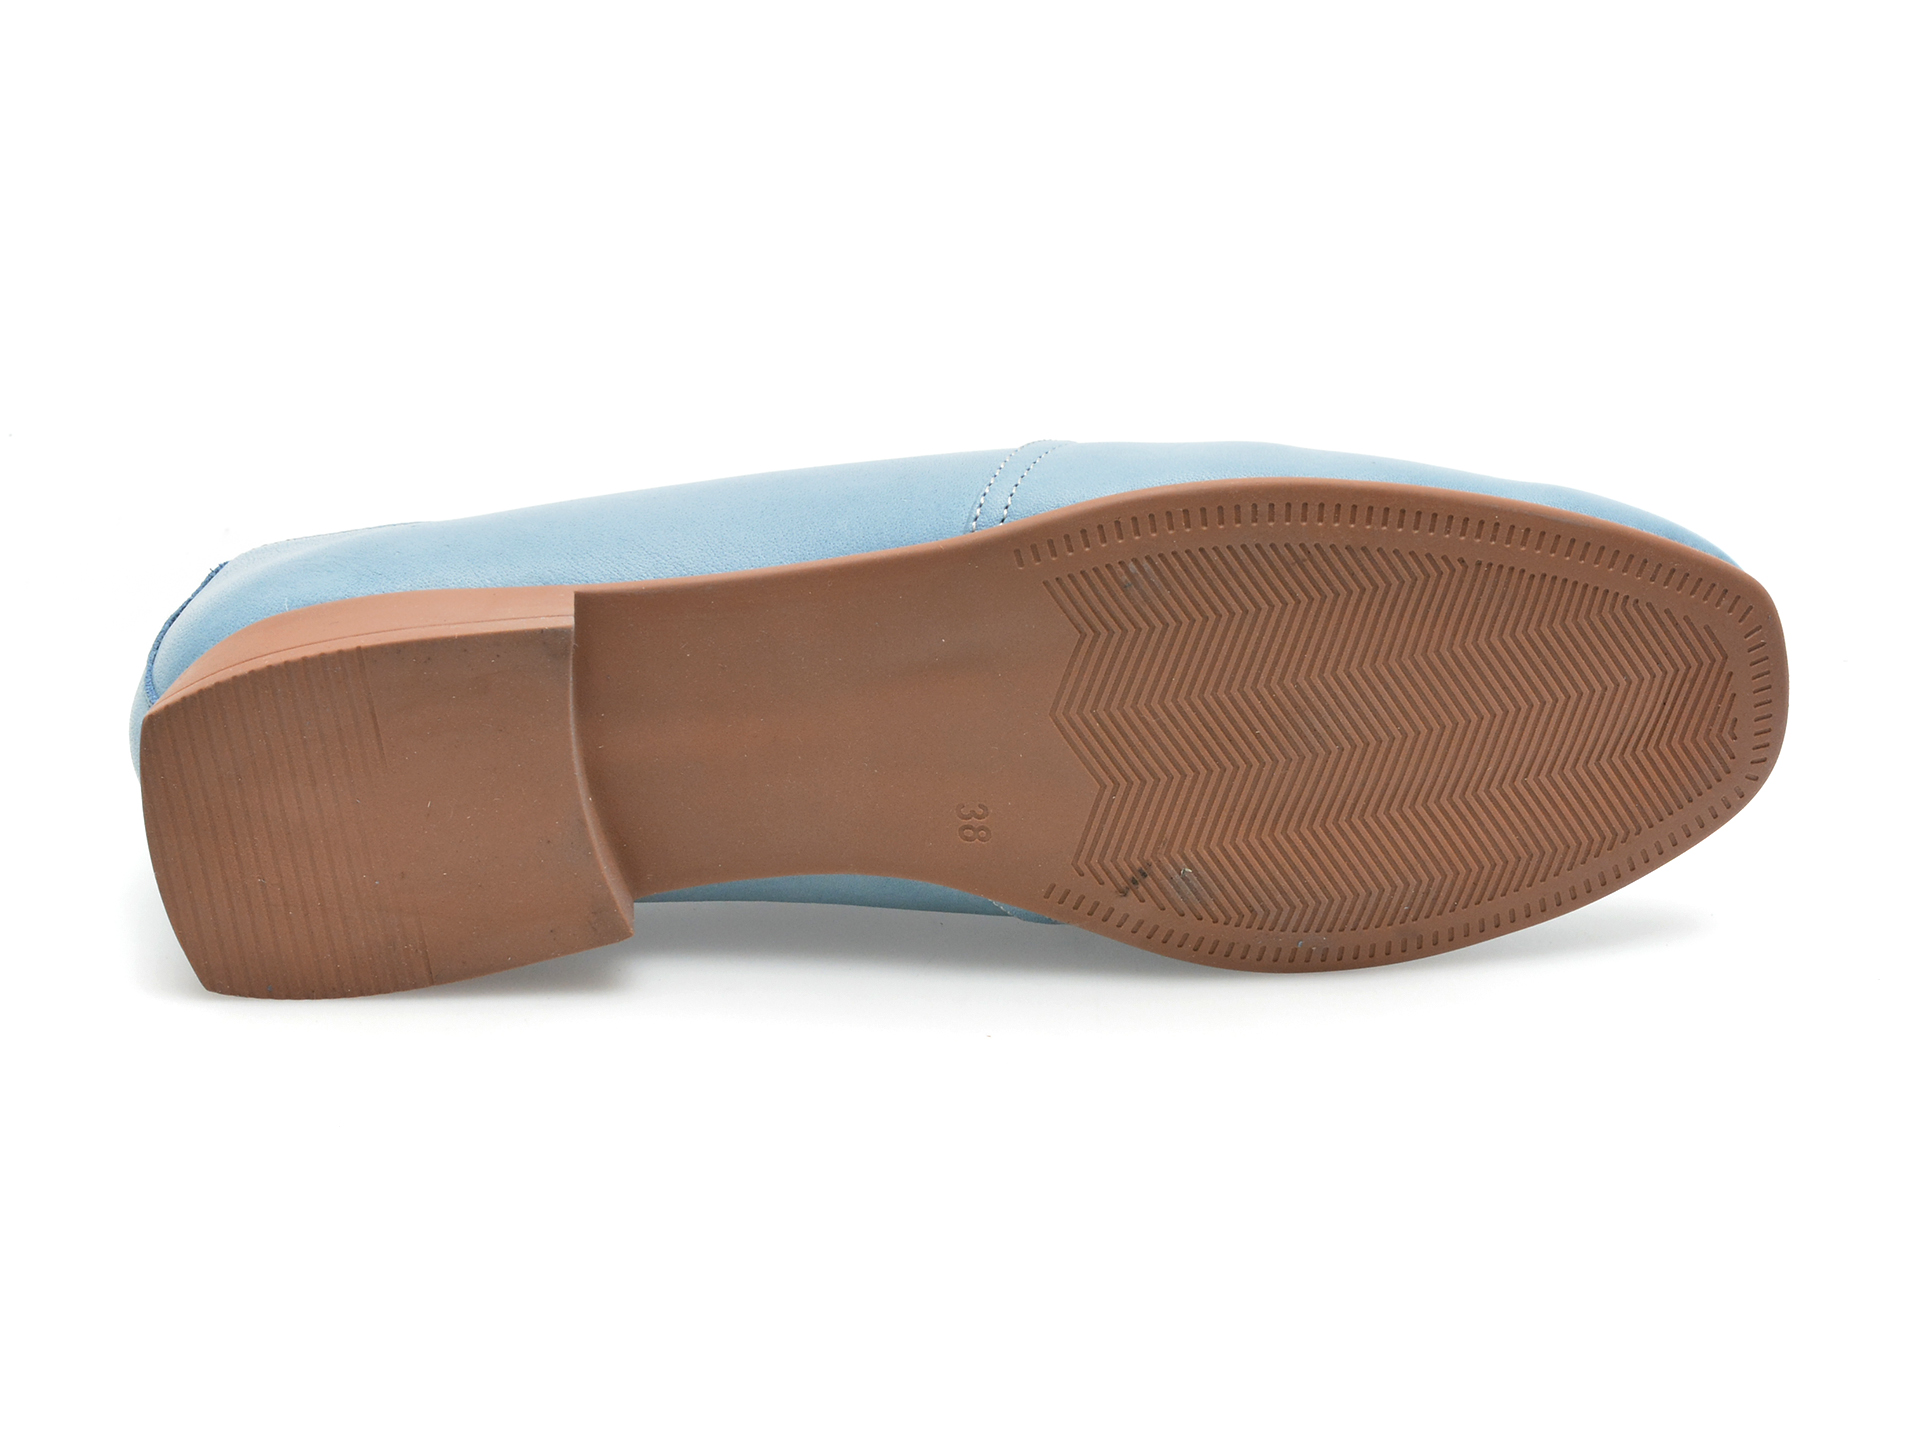 Pantofi GRYXX albastri, 10784, din piele naturala